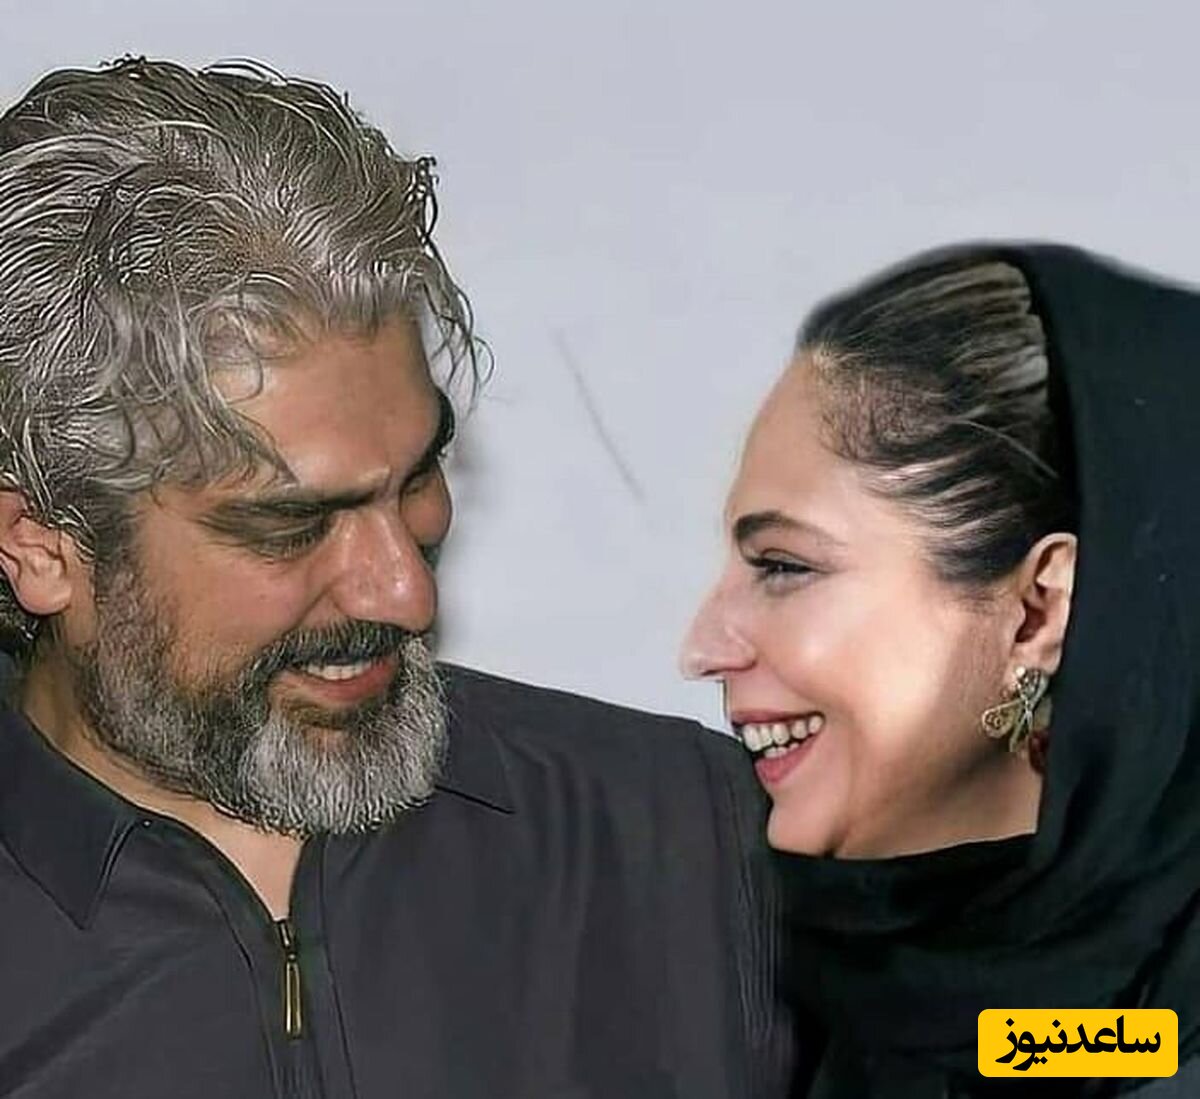 جدیدترین عکس سمیرای زخم کاری و همسرش مهدی پاکدل در کنار هوادار مشترکشون